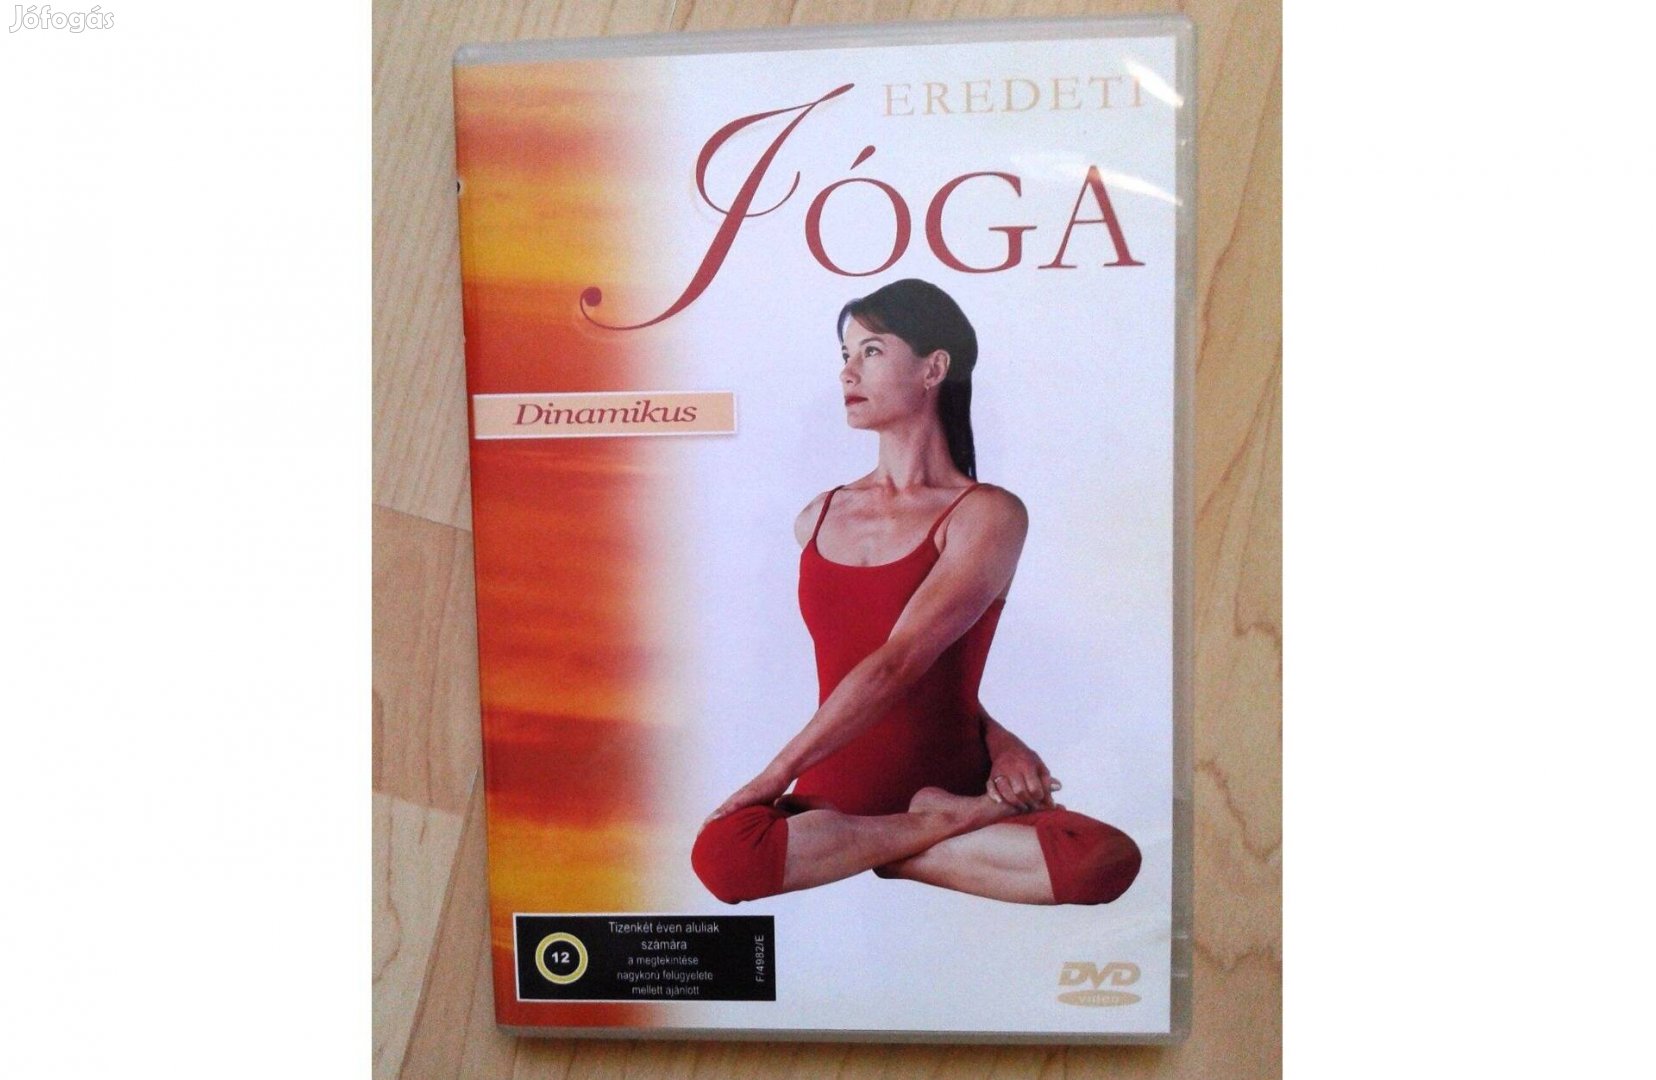 Dinamikus jóga és Könnyű jóga - 2 dvd szinte ingyen